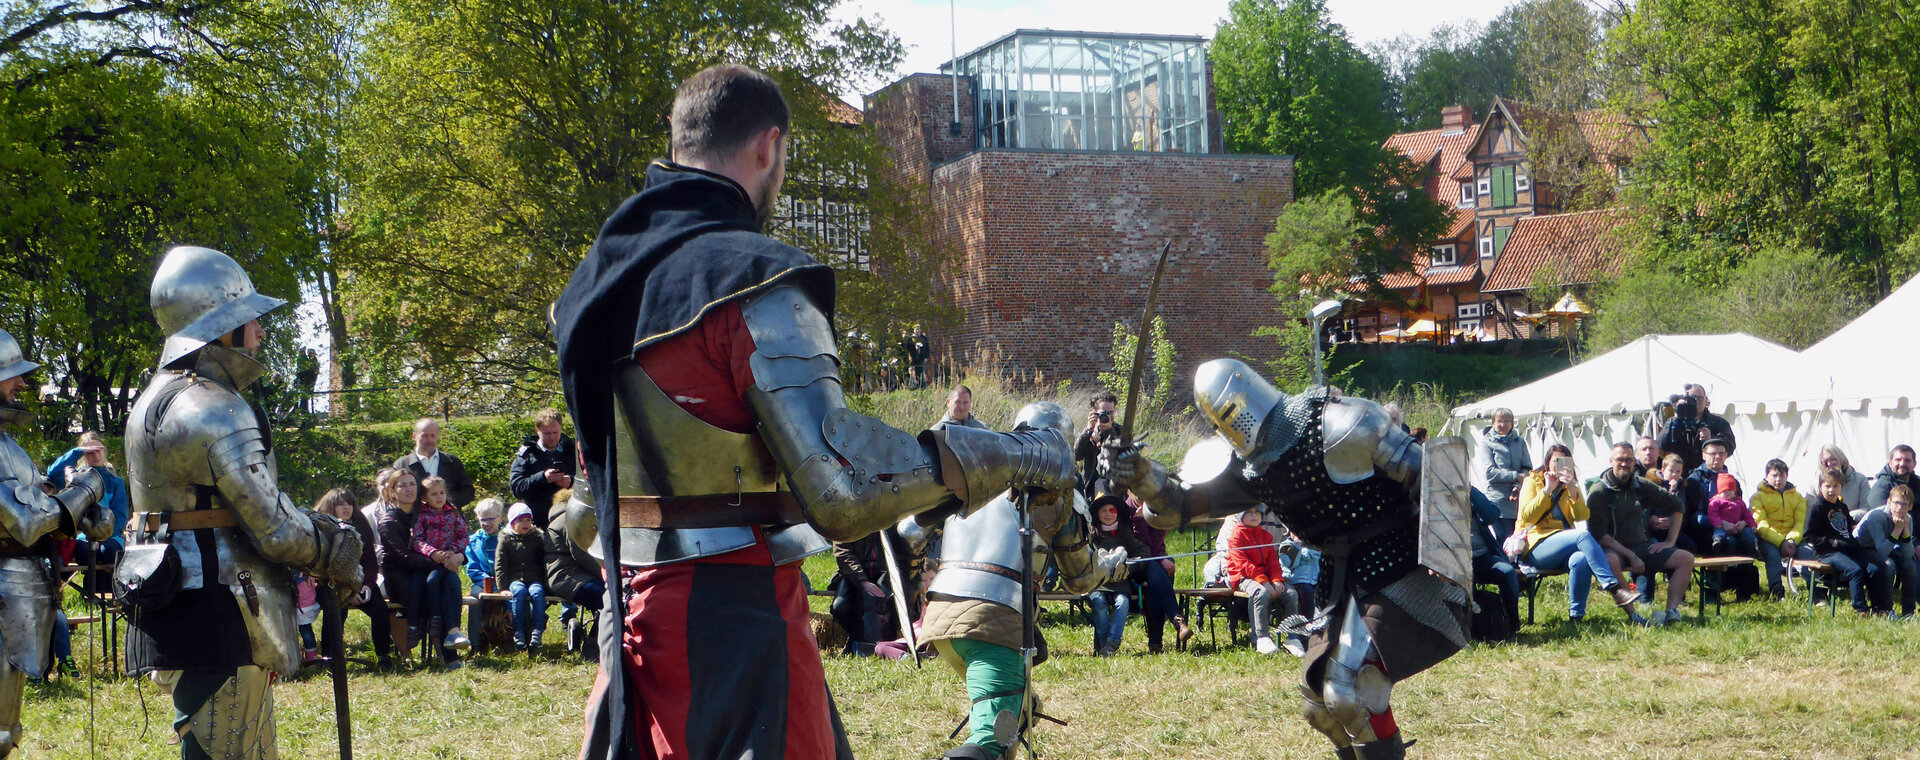 Kämpfende Ritter in Rüstungen auf dem mittelalterlichen Burgspektakel in Bad Bodenteich